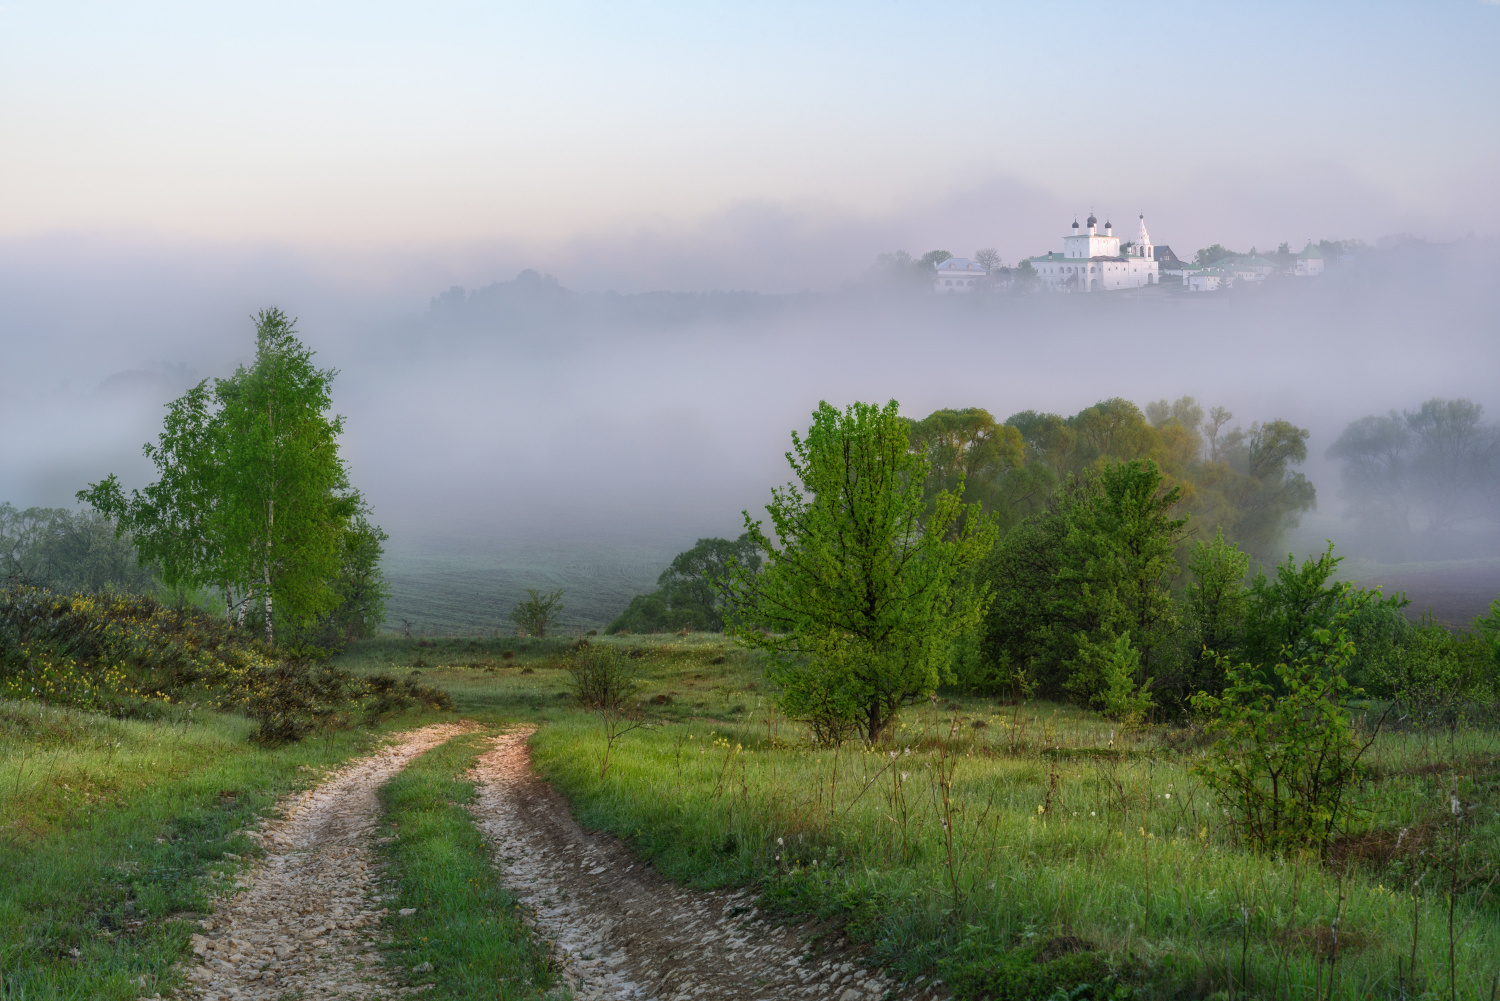 Dreamy road одоев анастасово утро рассвет туман сиреневый холмы май весна природа россии туманный тульская область село монастырь храм